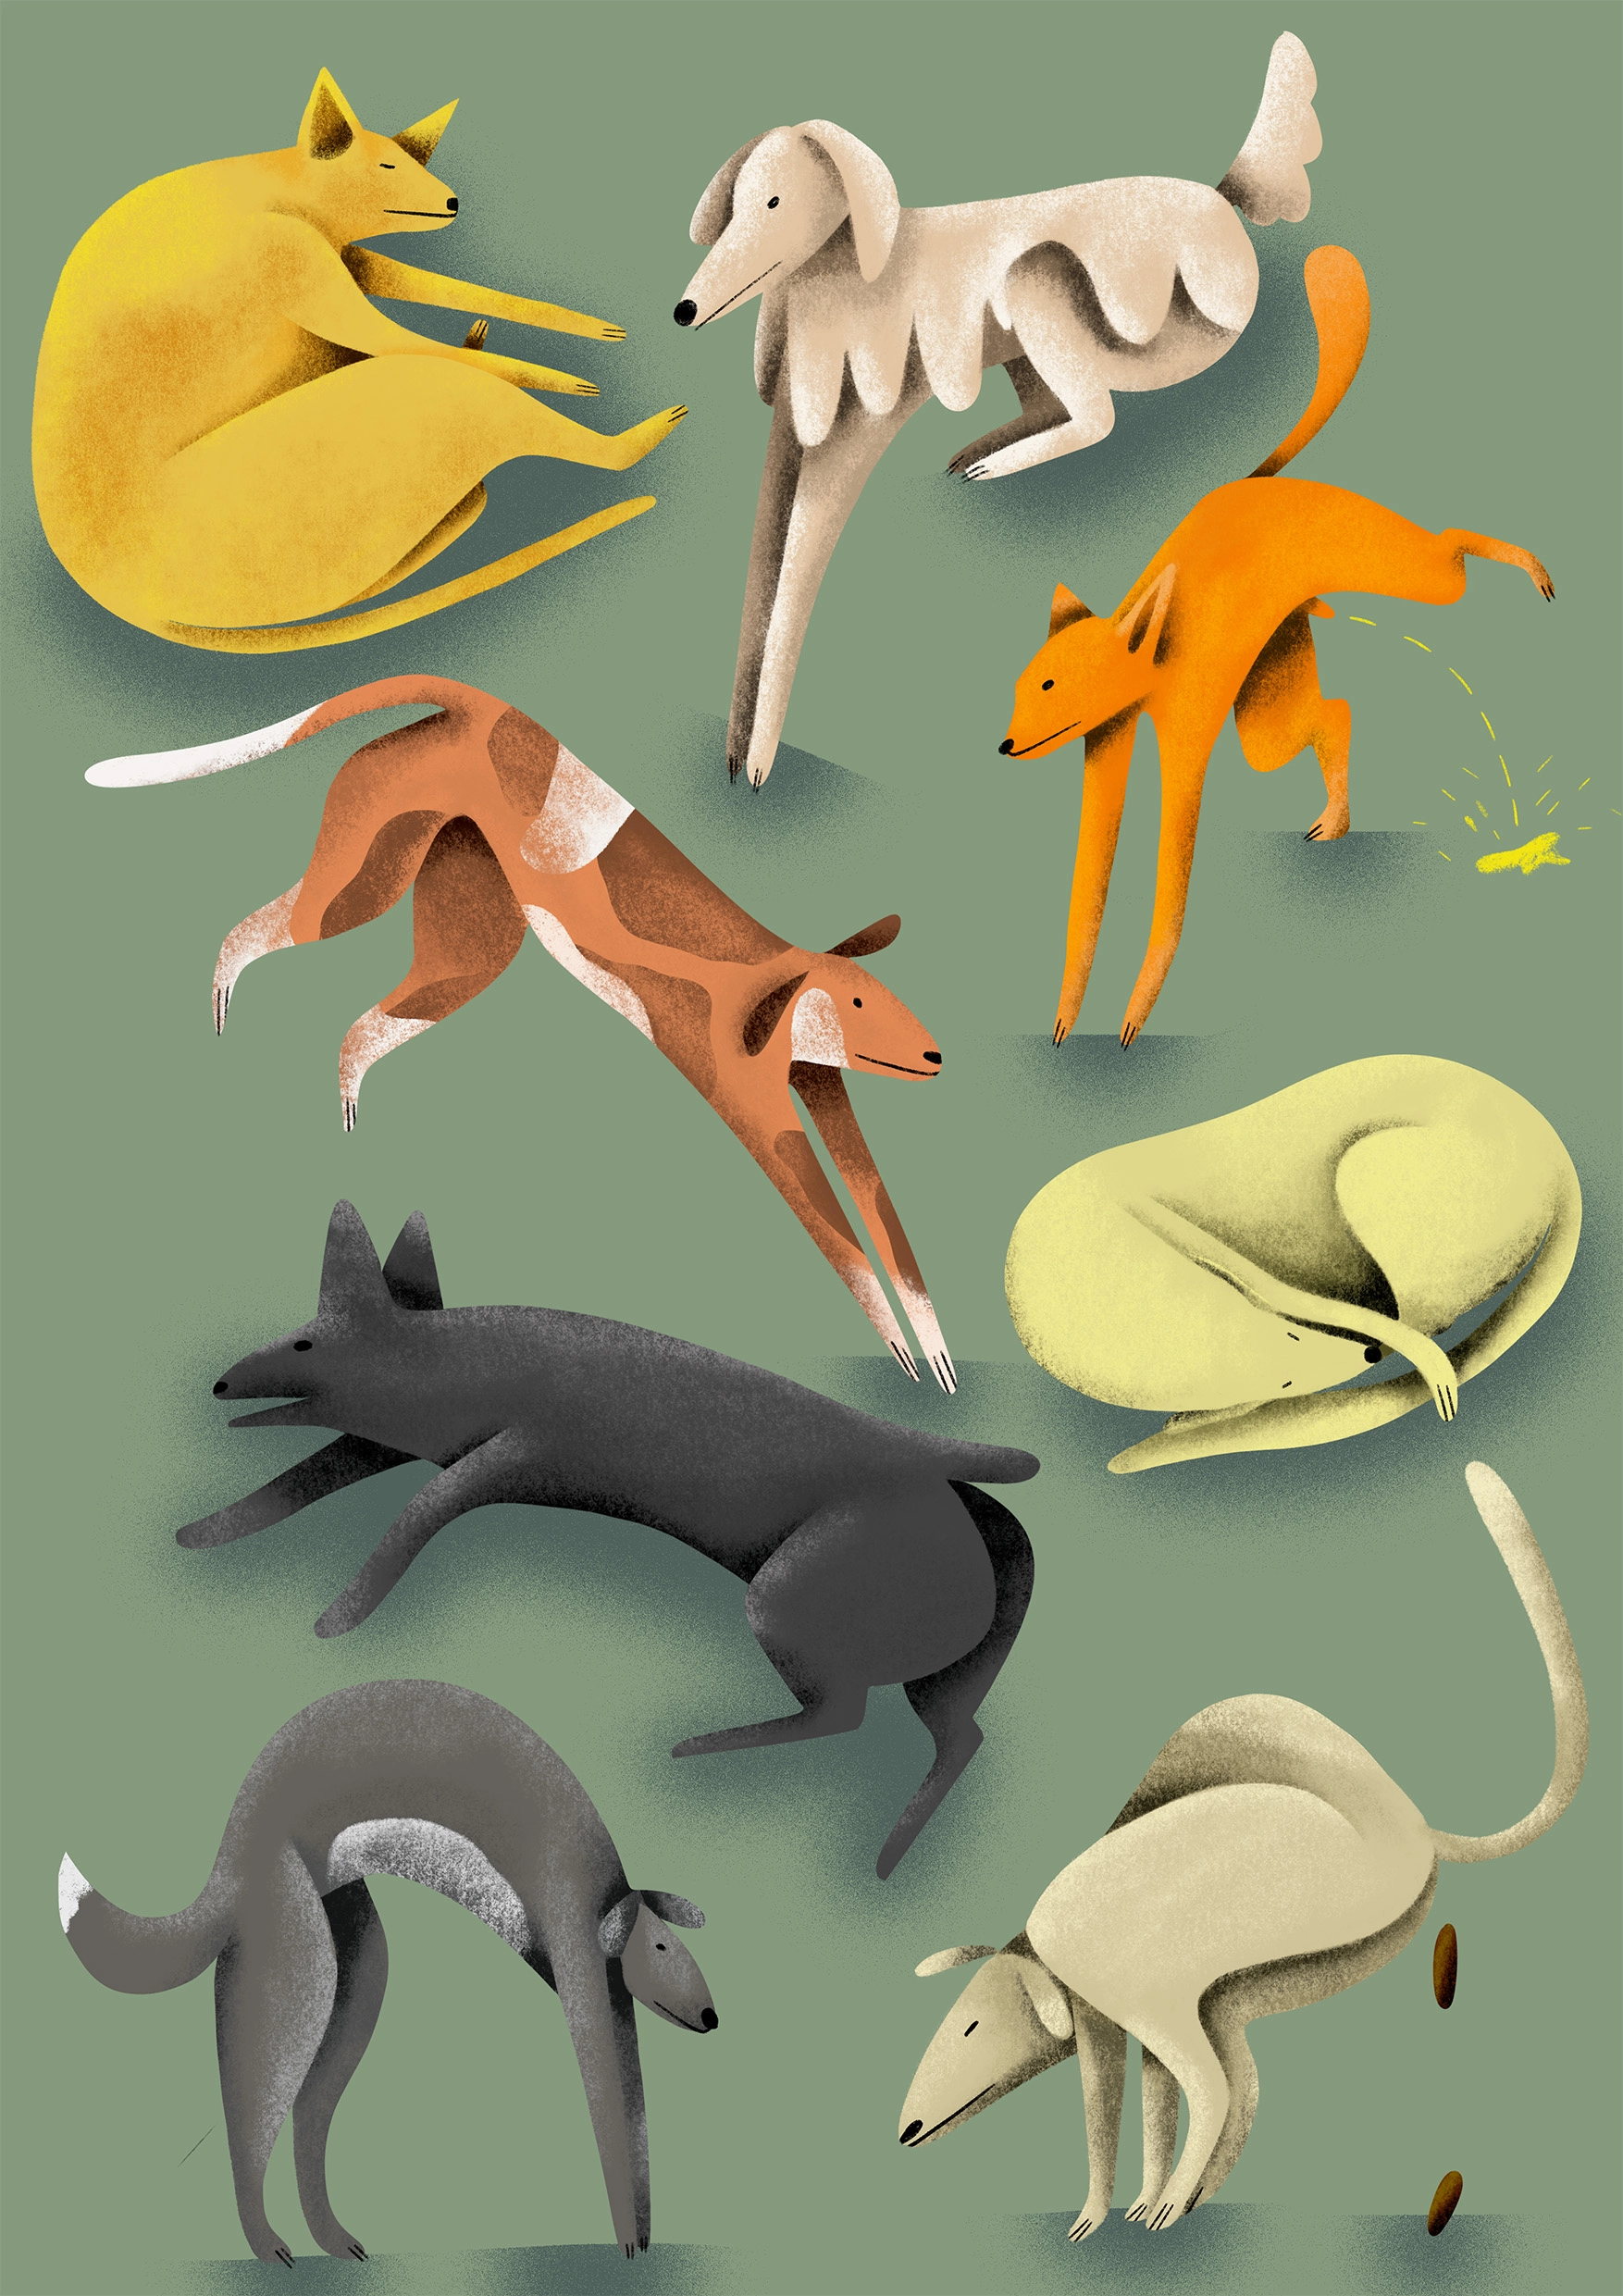 996-loretta-ipsum-illustration-dogs-dogstuff.jpg